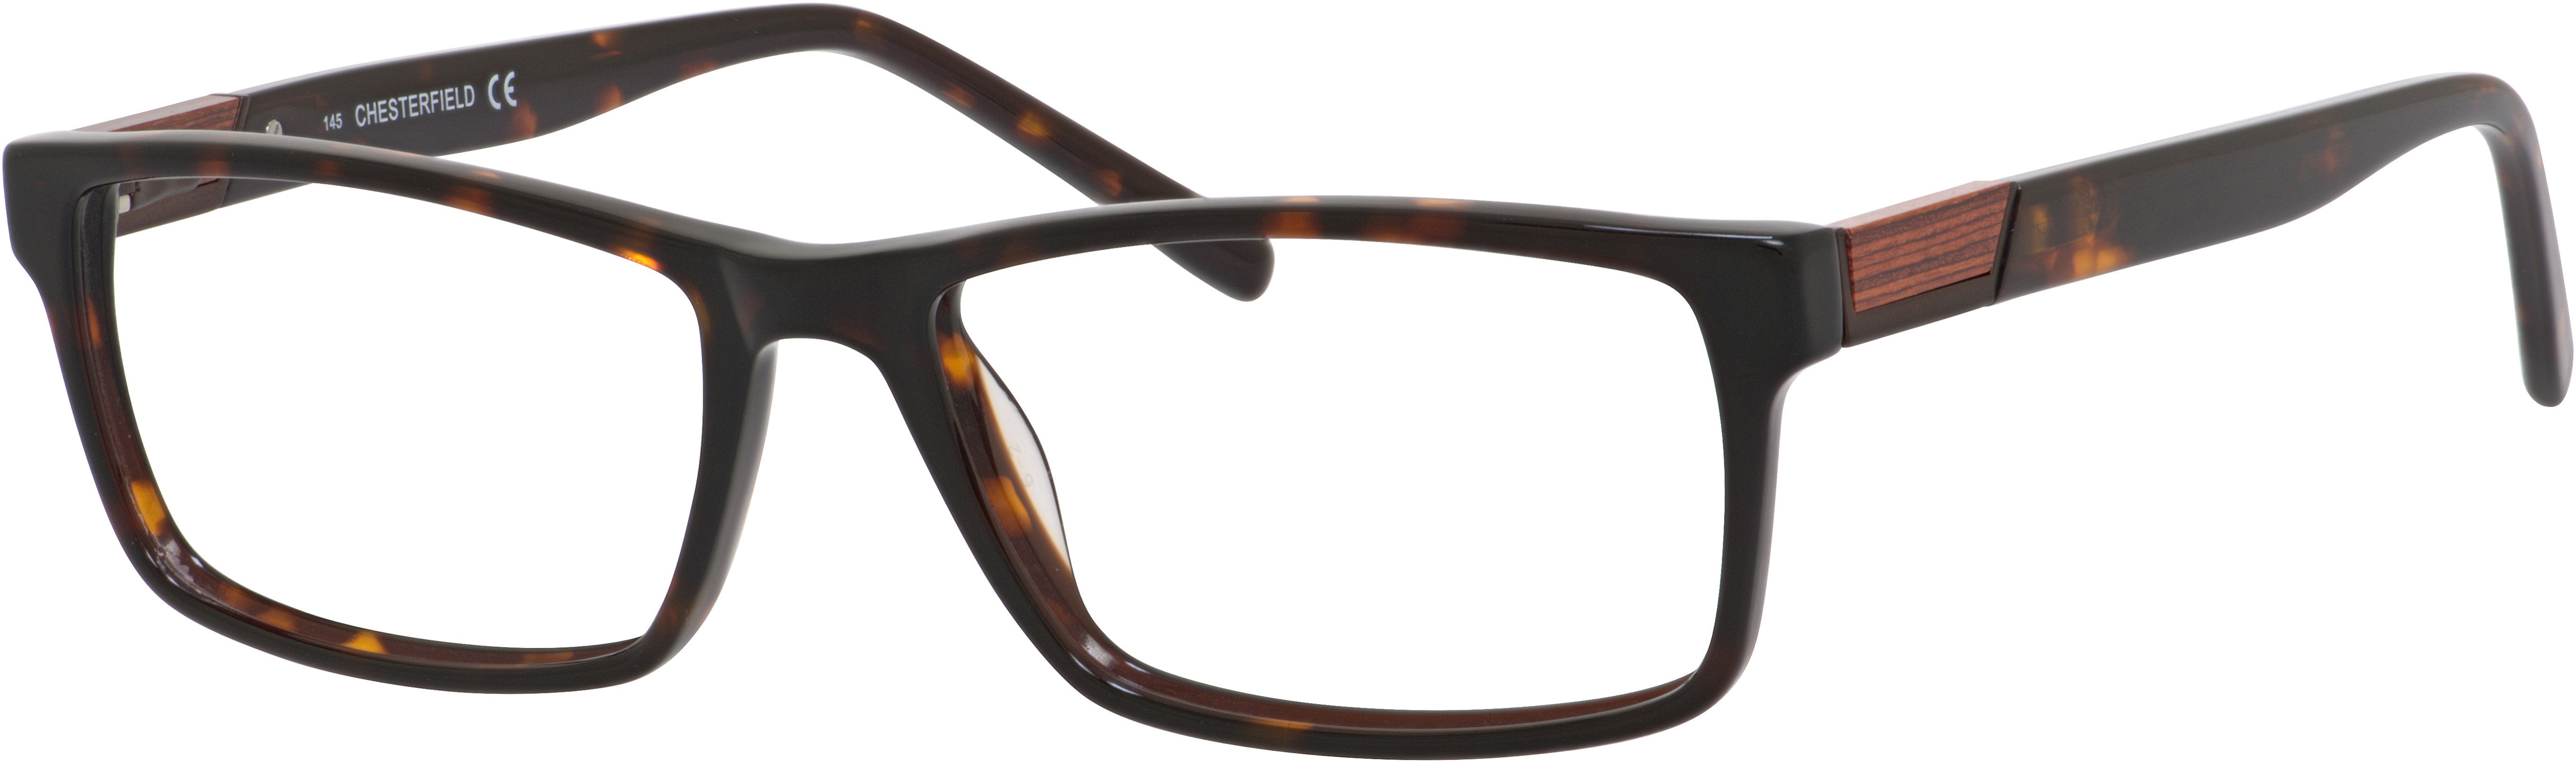  Chesterfield 44 XL Rectangular Eyeglasses 0086-0086  Dark Havana (00 Demo Lens)